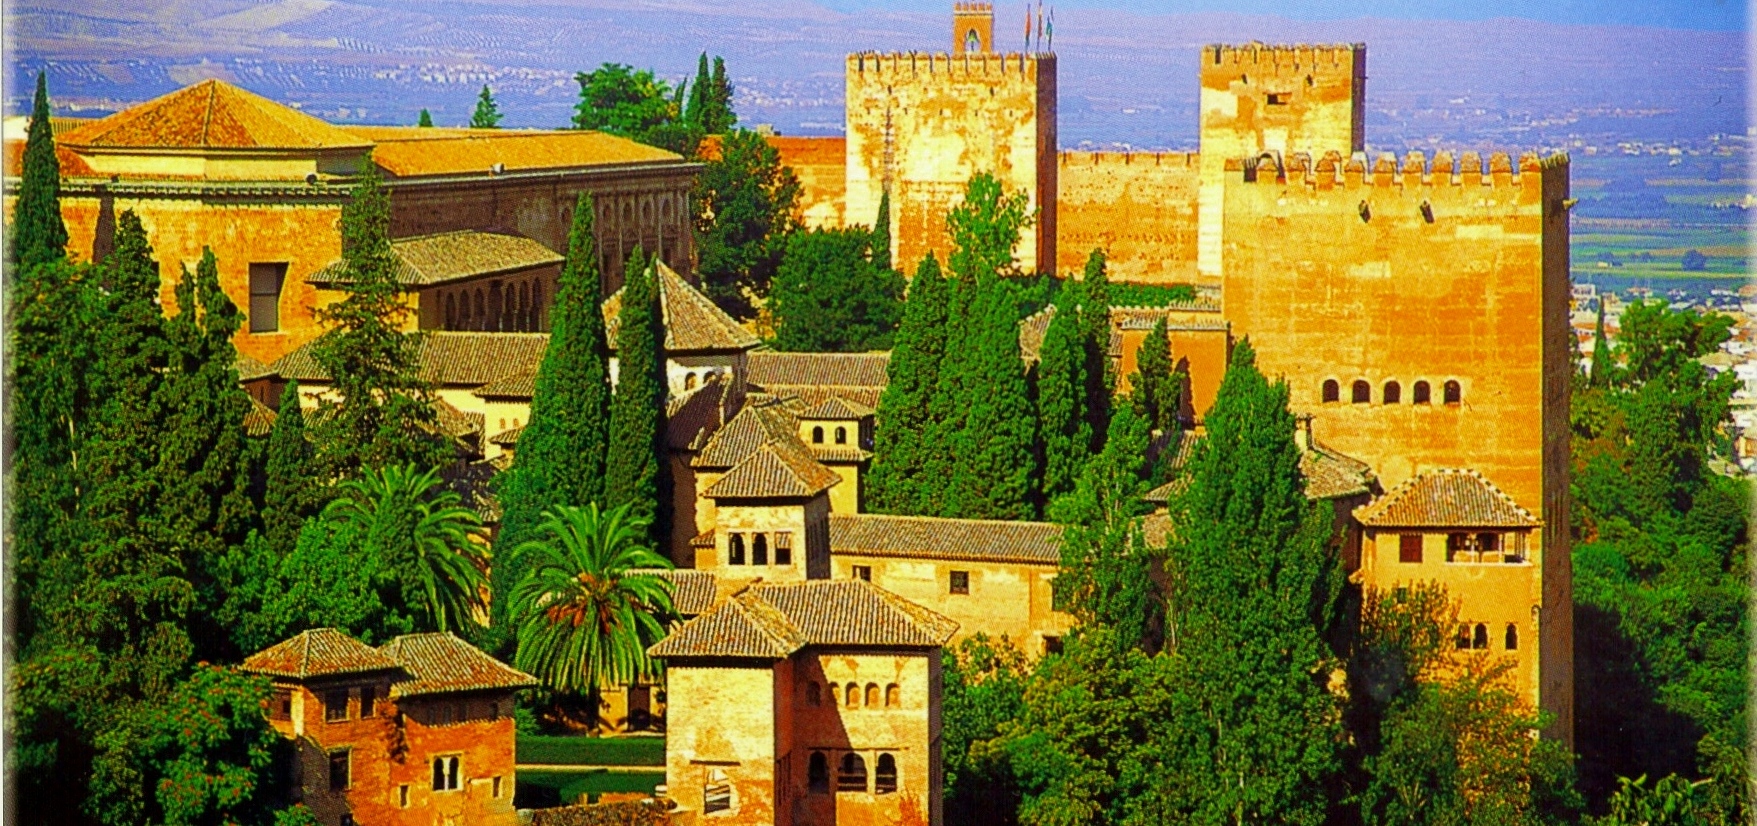 Испания, дворцово-парковый ансамбль Альгамбра